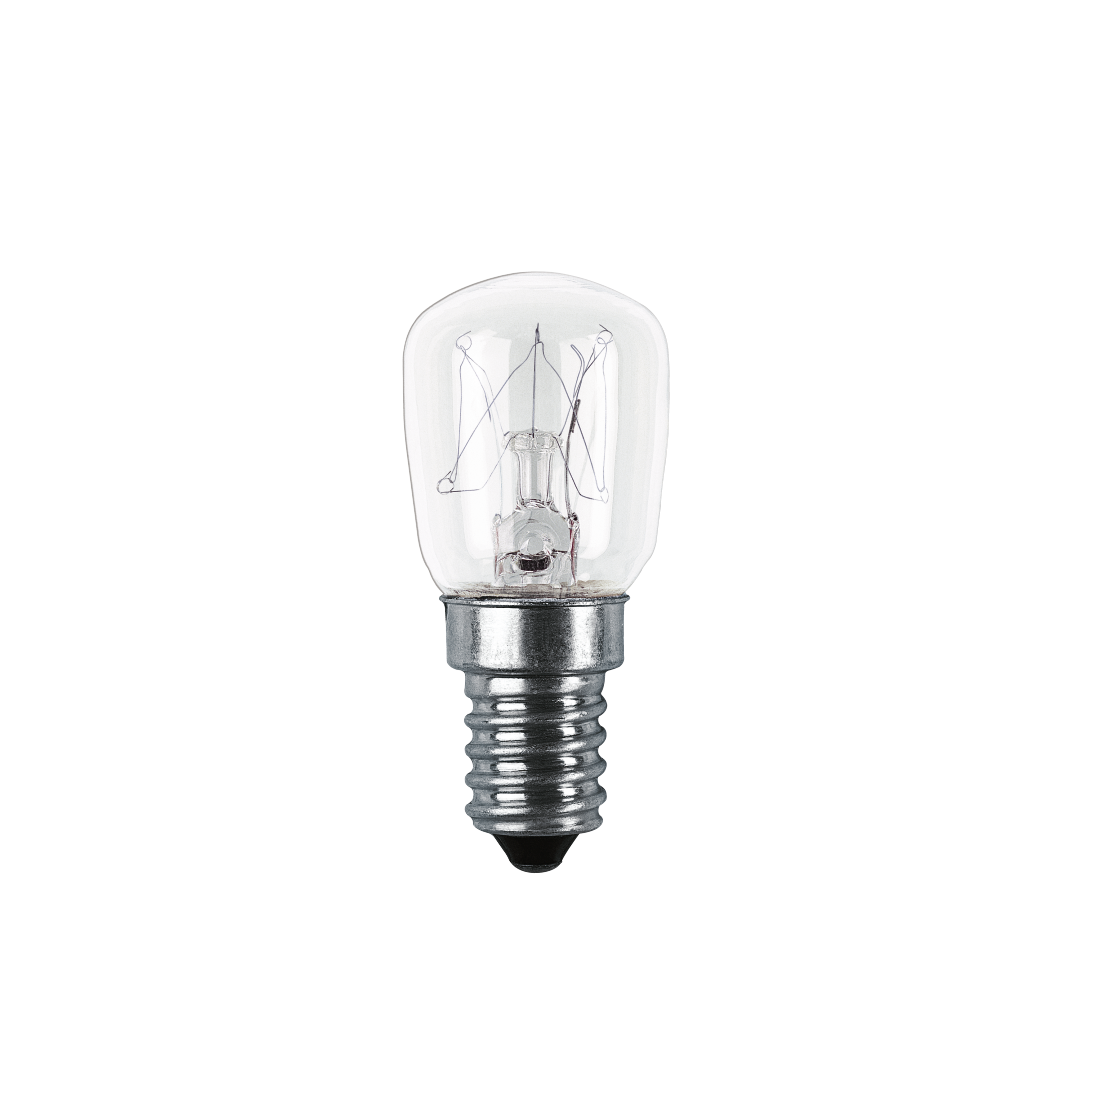 abx High-Res Image - Xavax, Lampe de réfrigérateur, 15W, E14, forme ampoule, transparente